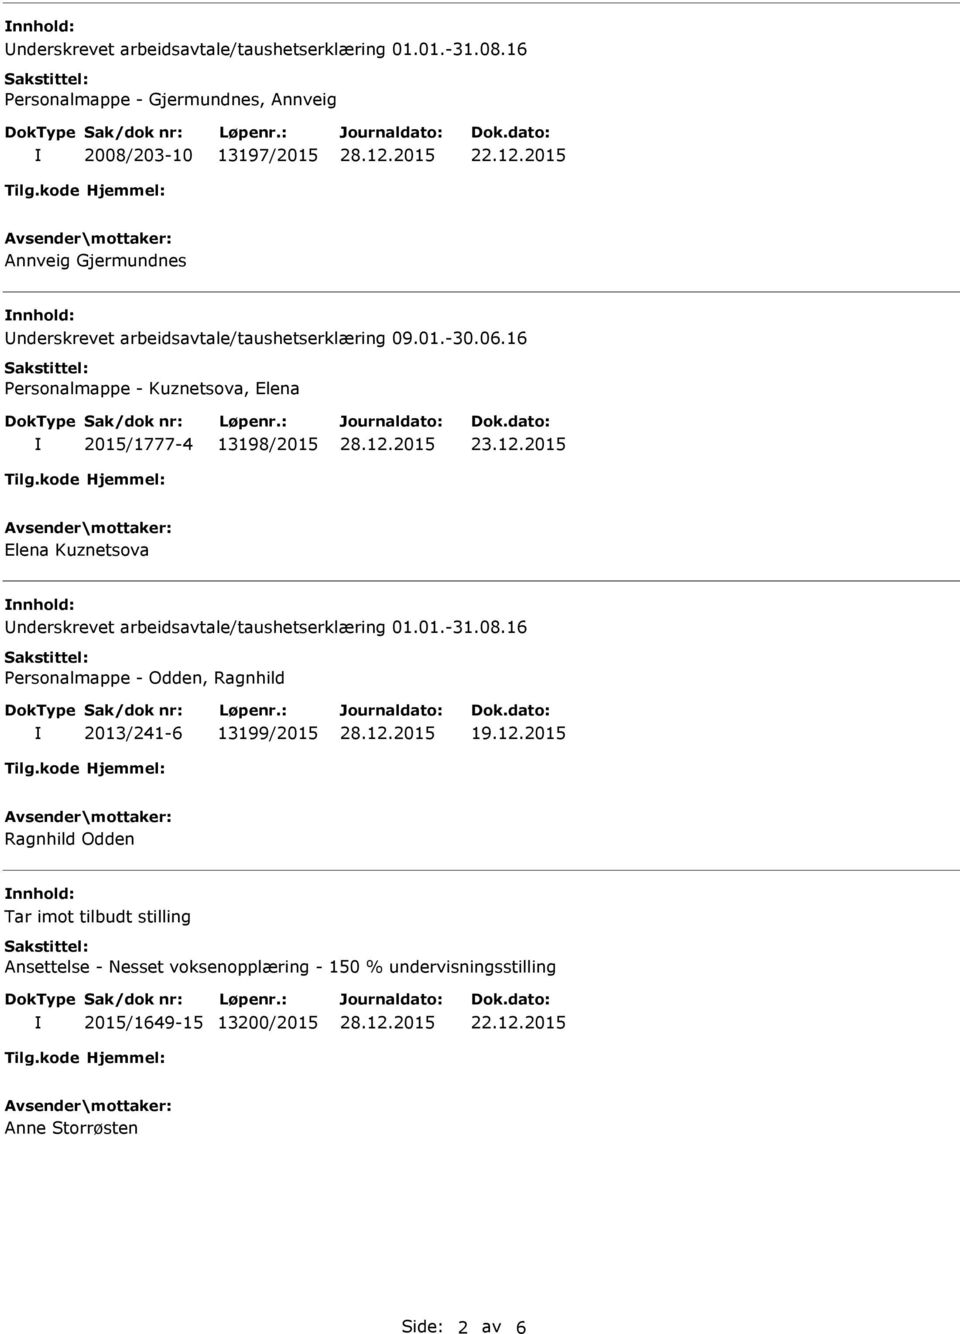 2015 Elena Kuznetsova nnhold: Underskrevet arbeidsavtale/taushetserklæring 01.01.-31.08.16 Personalmappe - Odden, Ragnhild 2013/241-6 13199/2015 19.12.